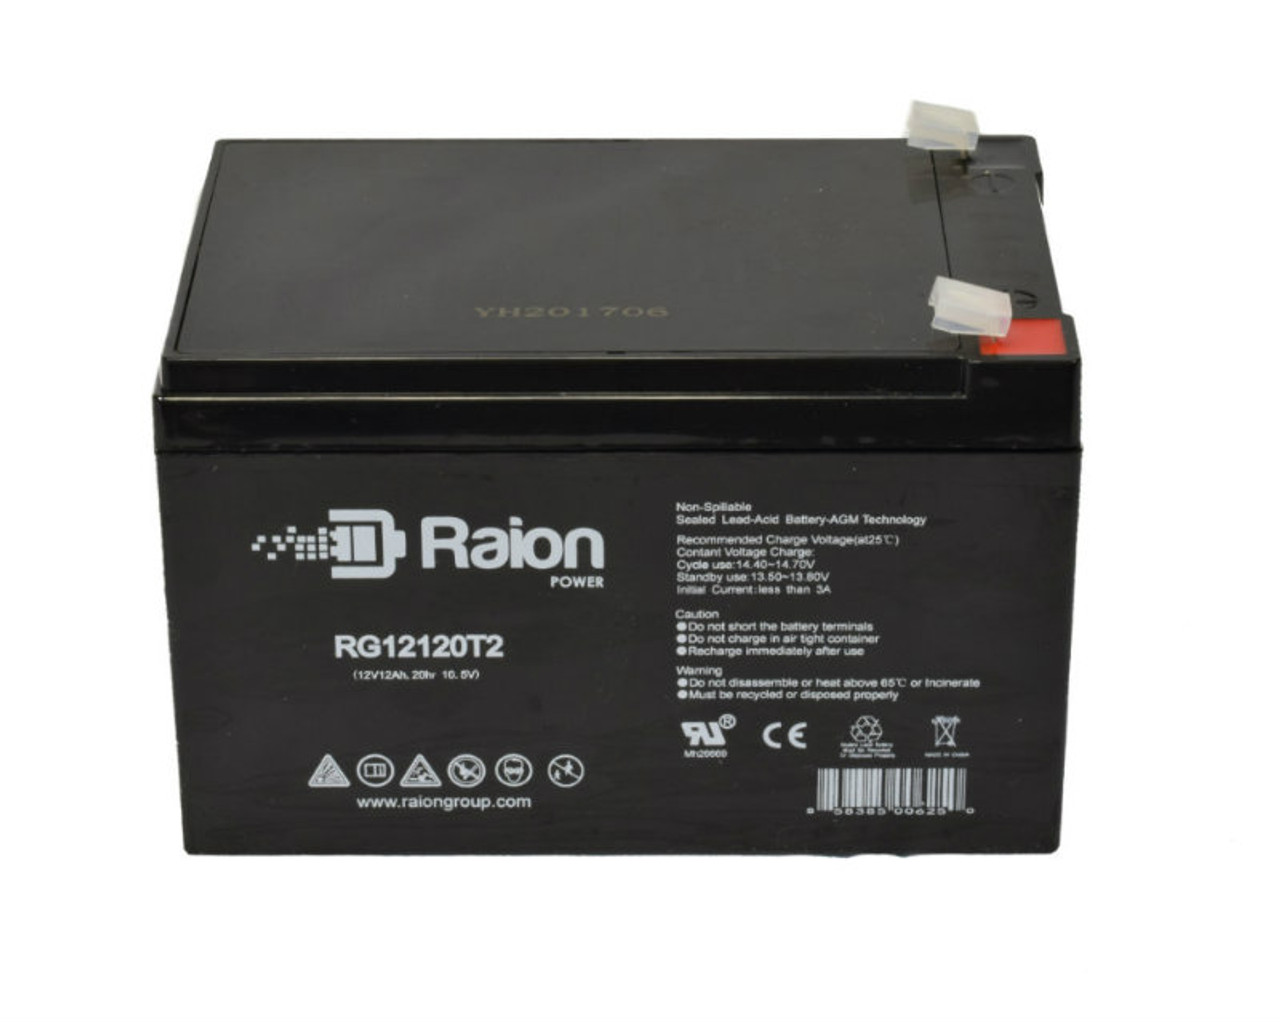 Raion Power RG12120T2 SLA Battery for Peg Perego John Deere Gator Revised IGOD0004